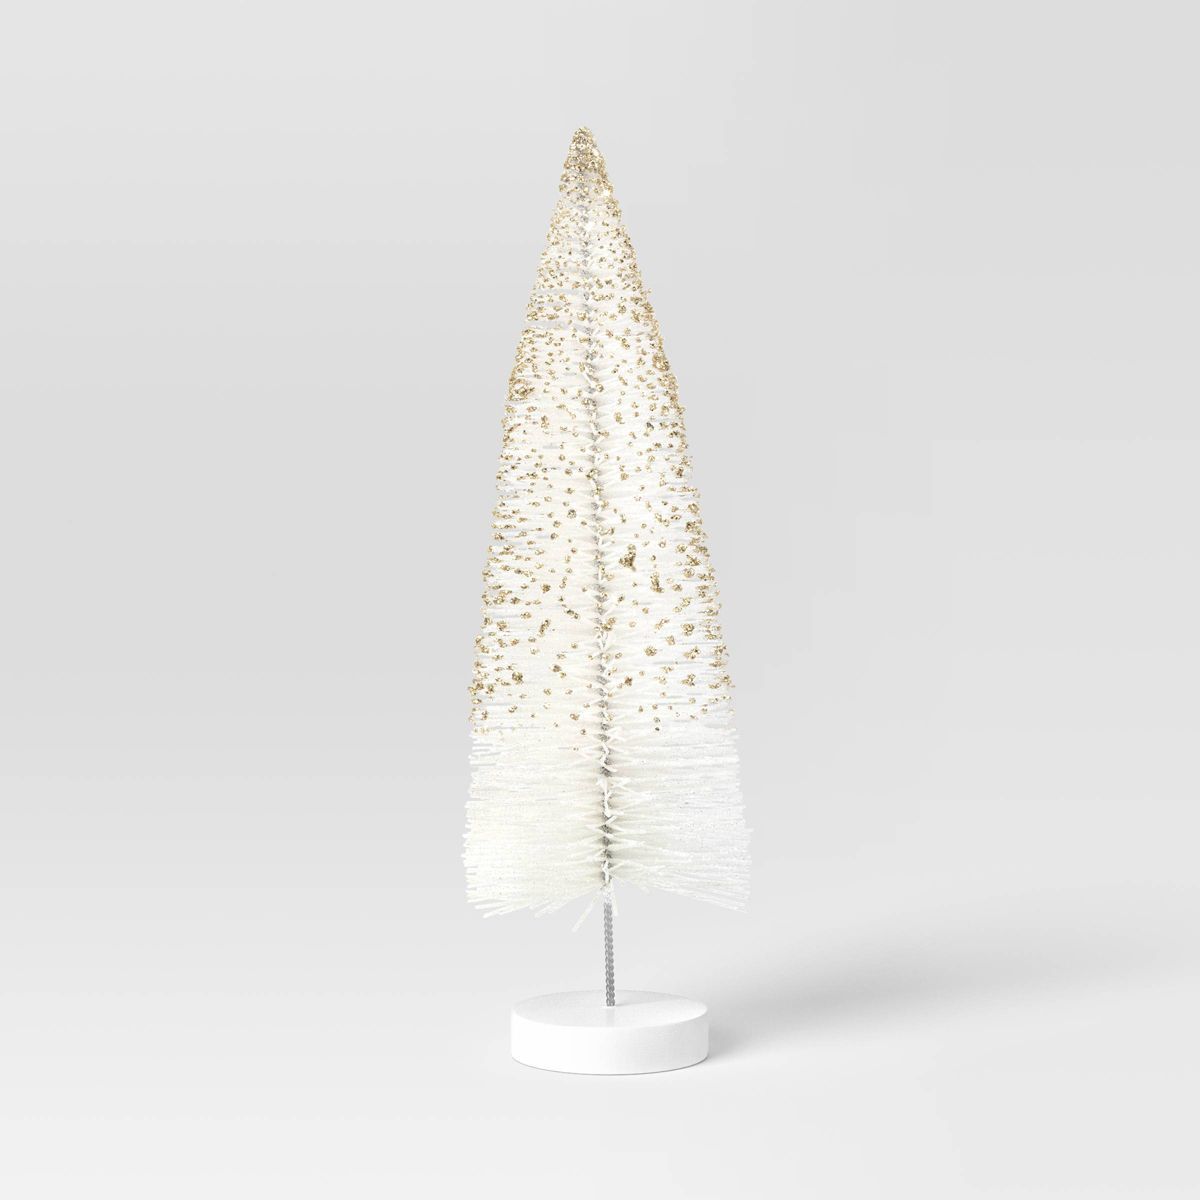 12" Glittered Sisal Christmas Bottle Brush Tree - Wondershop™ White | Target